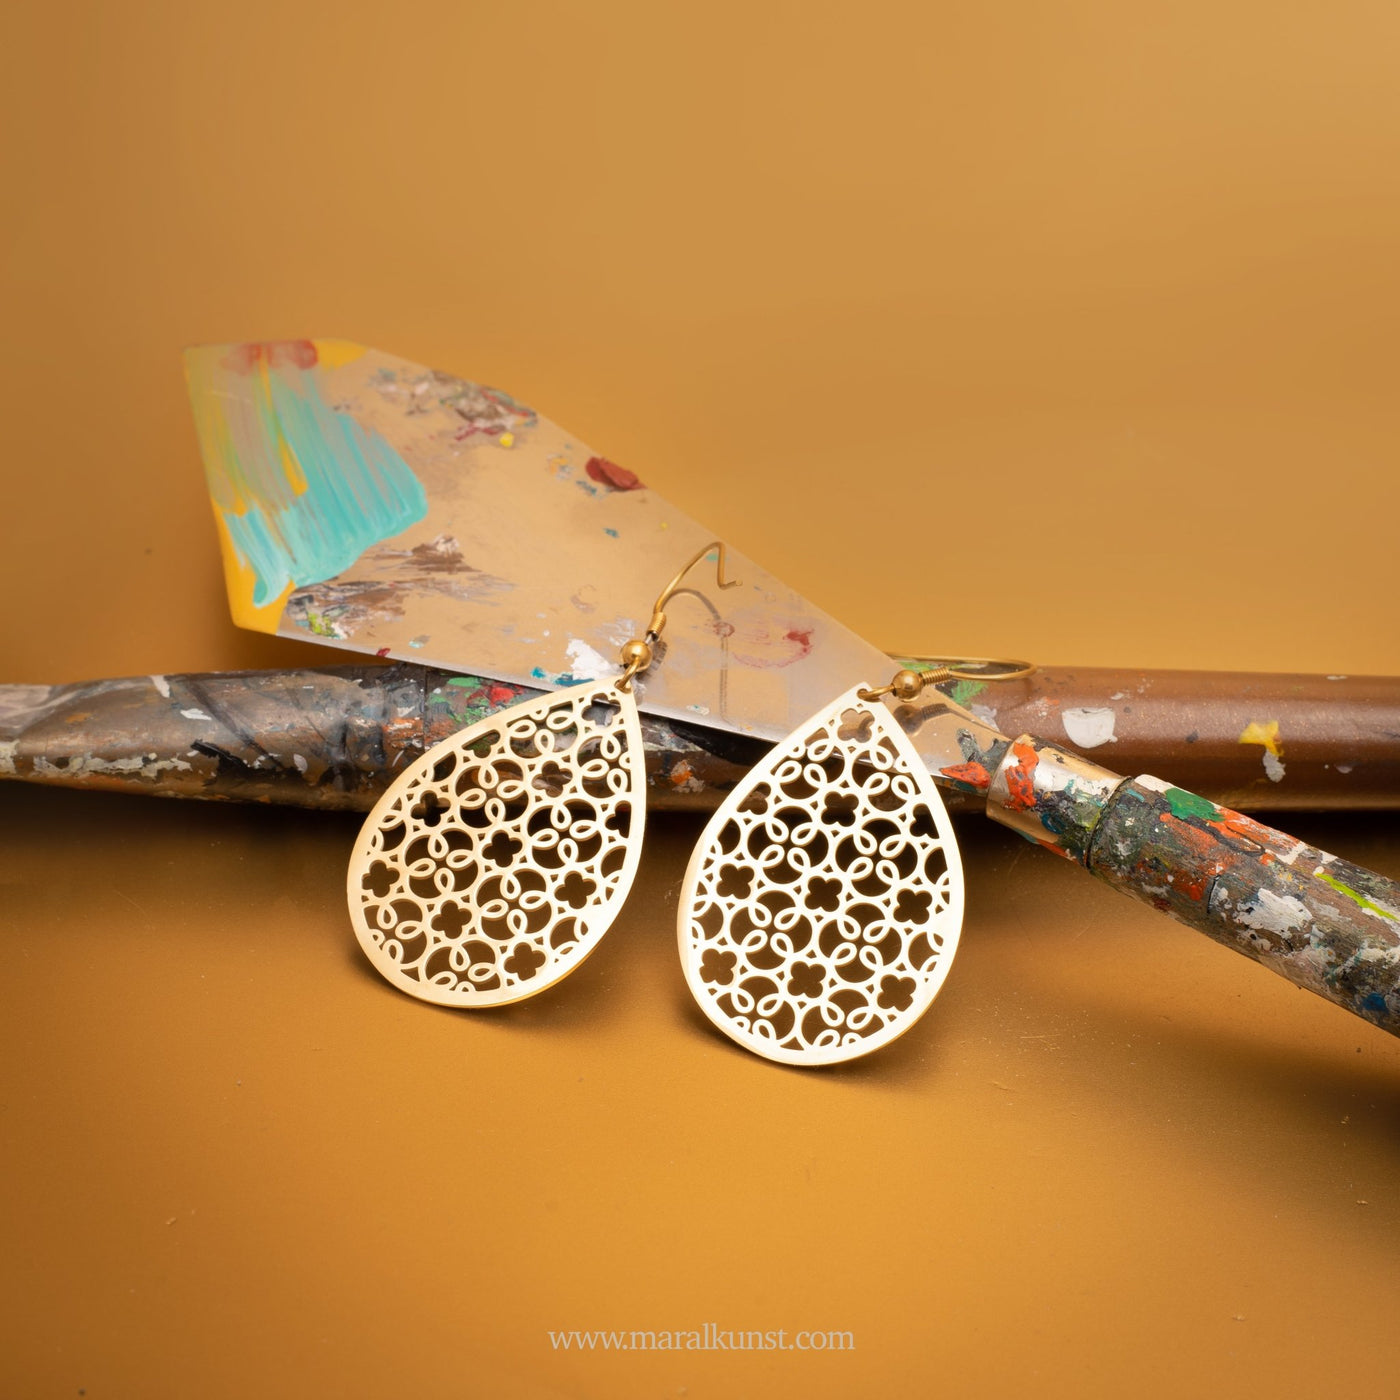 Cali Symmetrical Pattern Stainless Steel Retro Earrings - Maral Kunst Jewelry